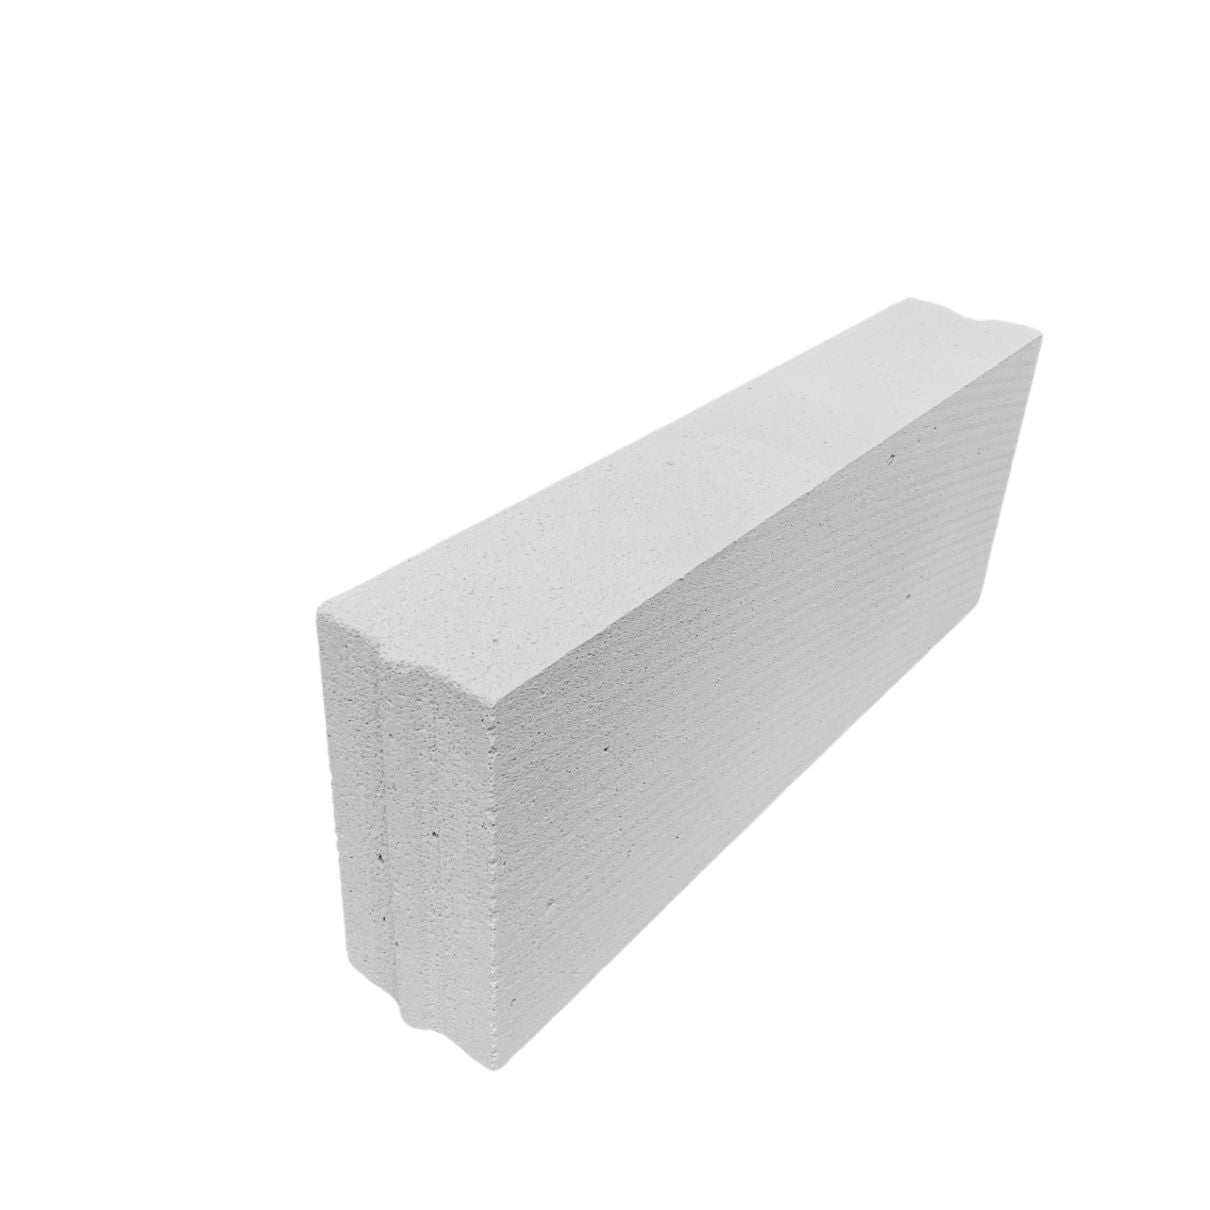 Aerated concrete Block C4 625x250x115mm